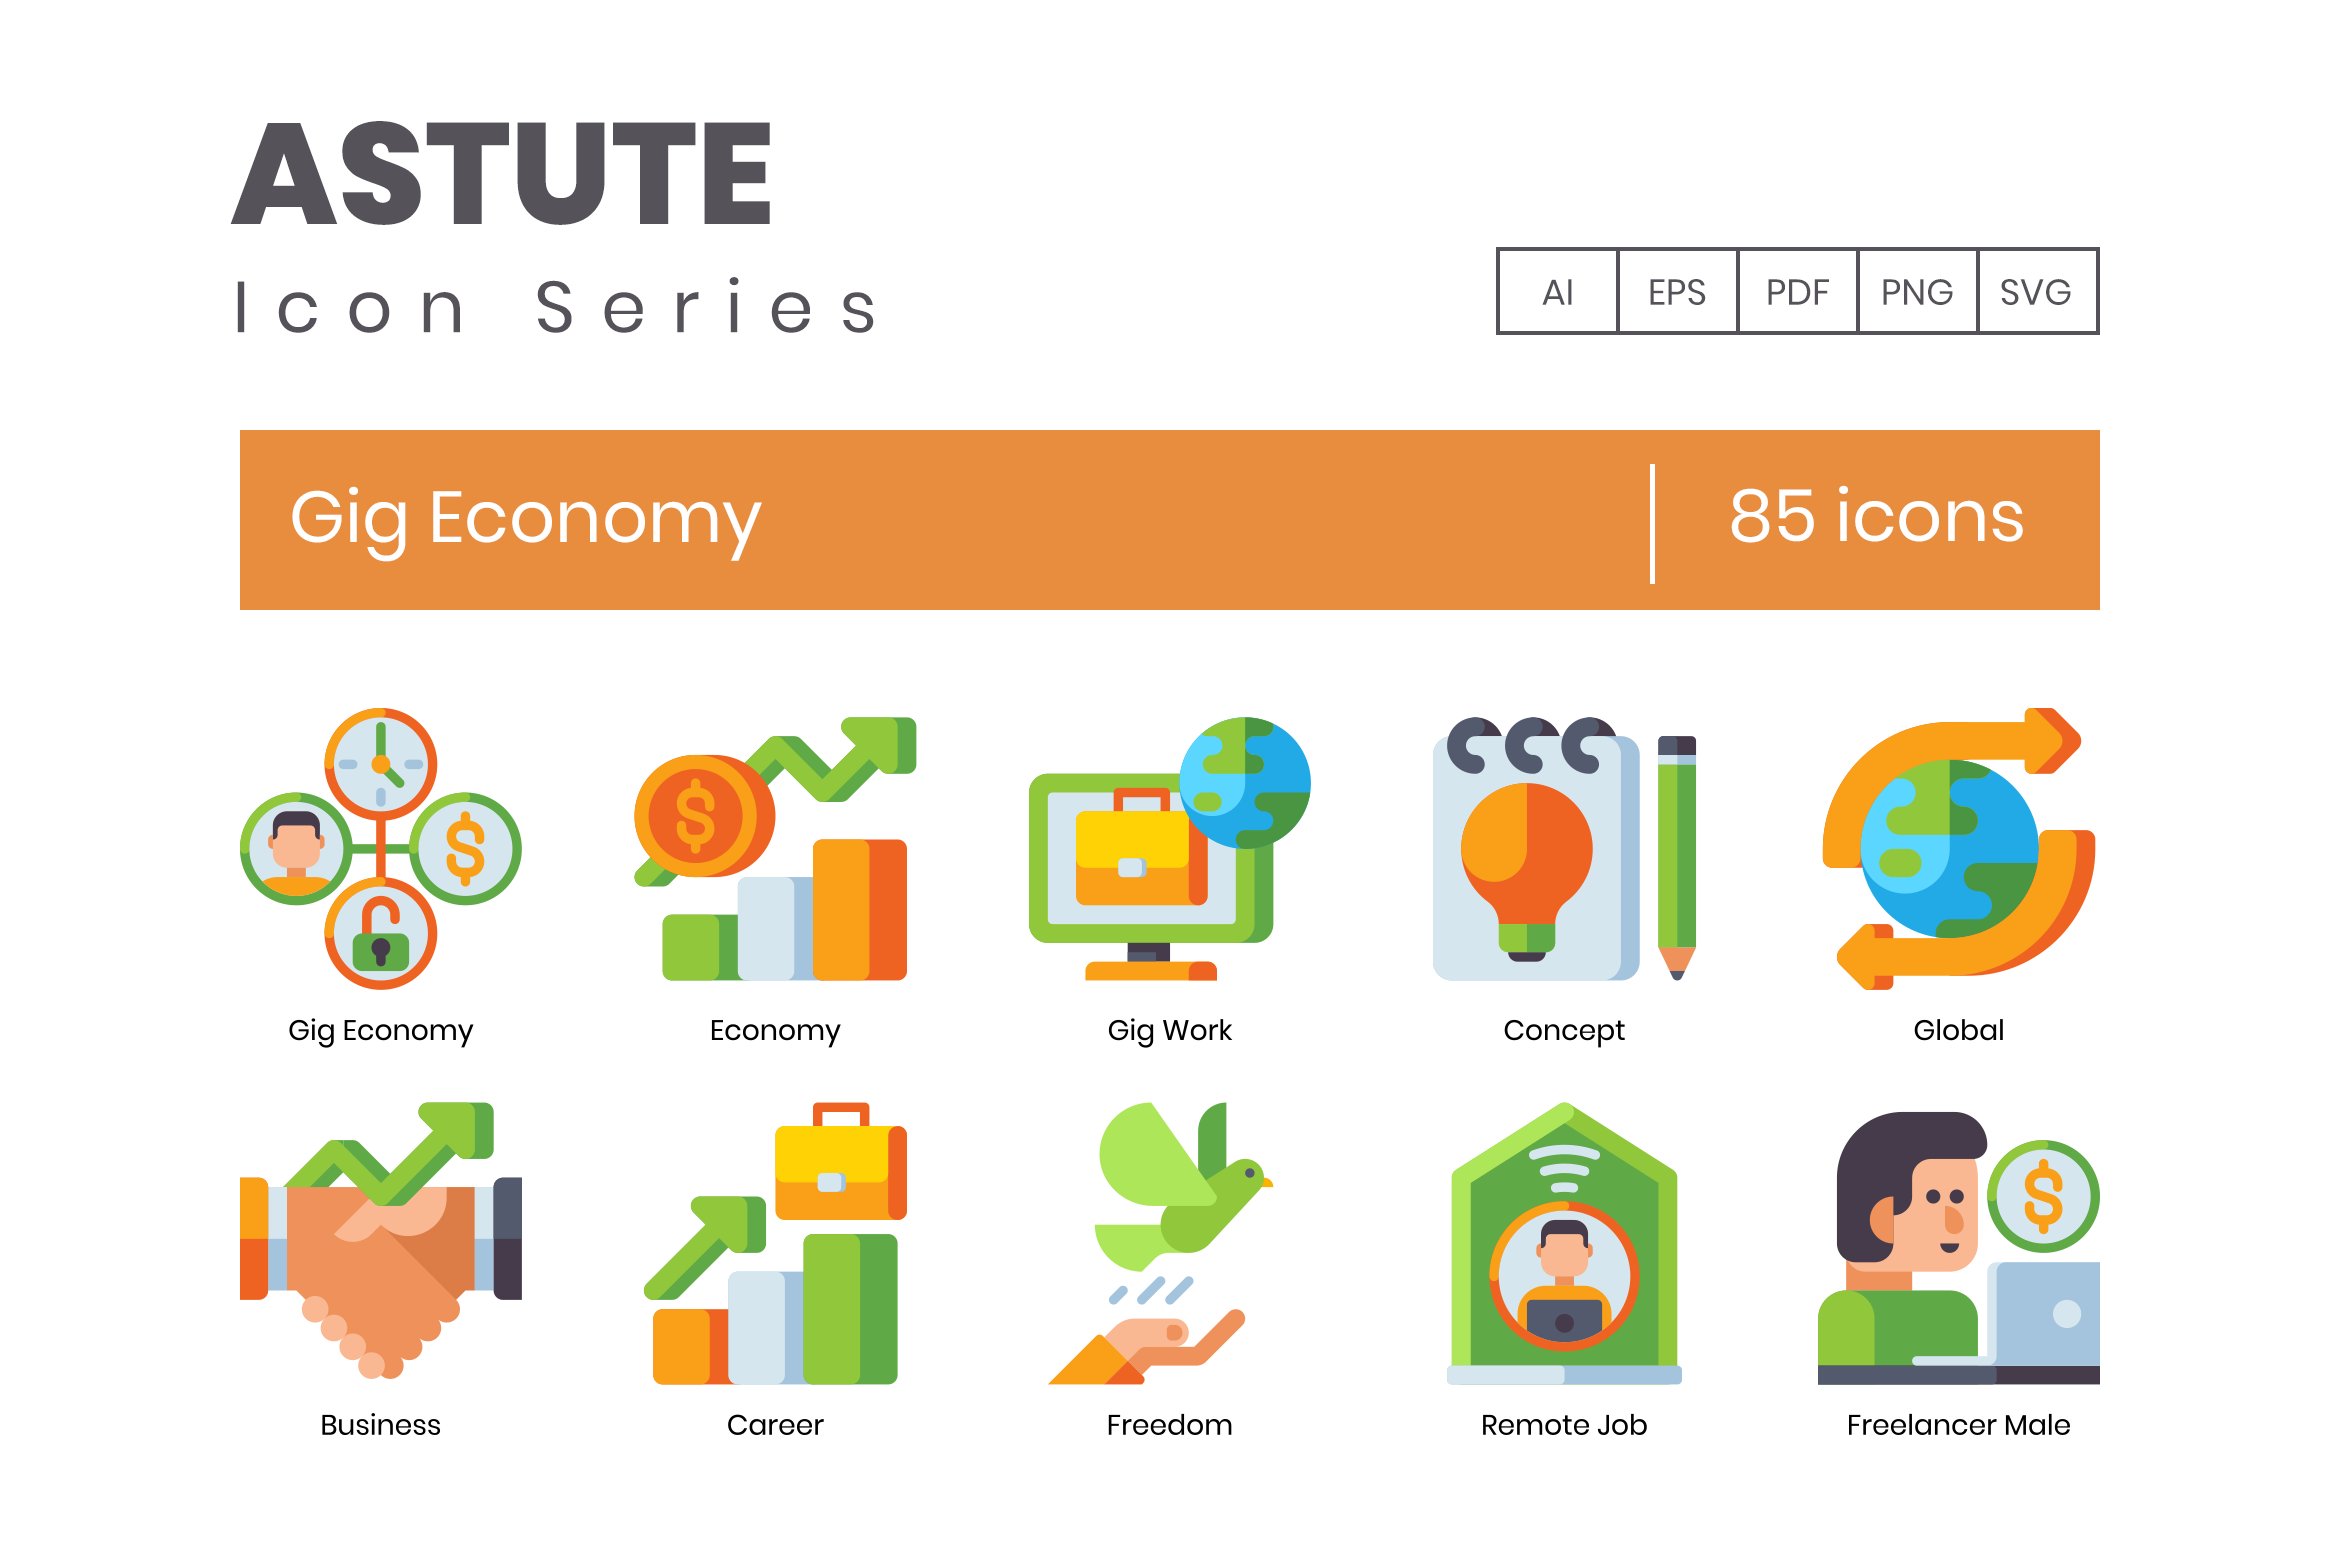 85 Gig Economy Icons | Astute cover image.